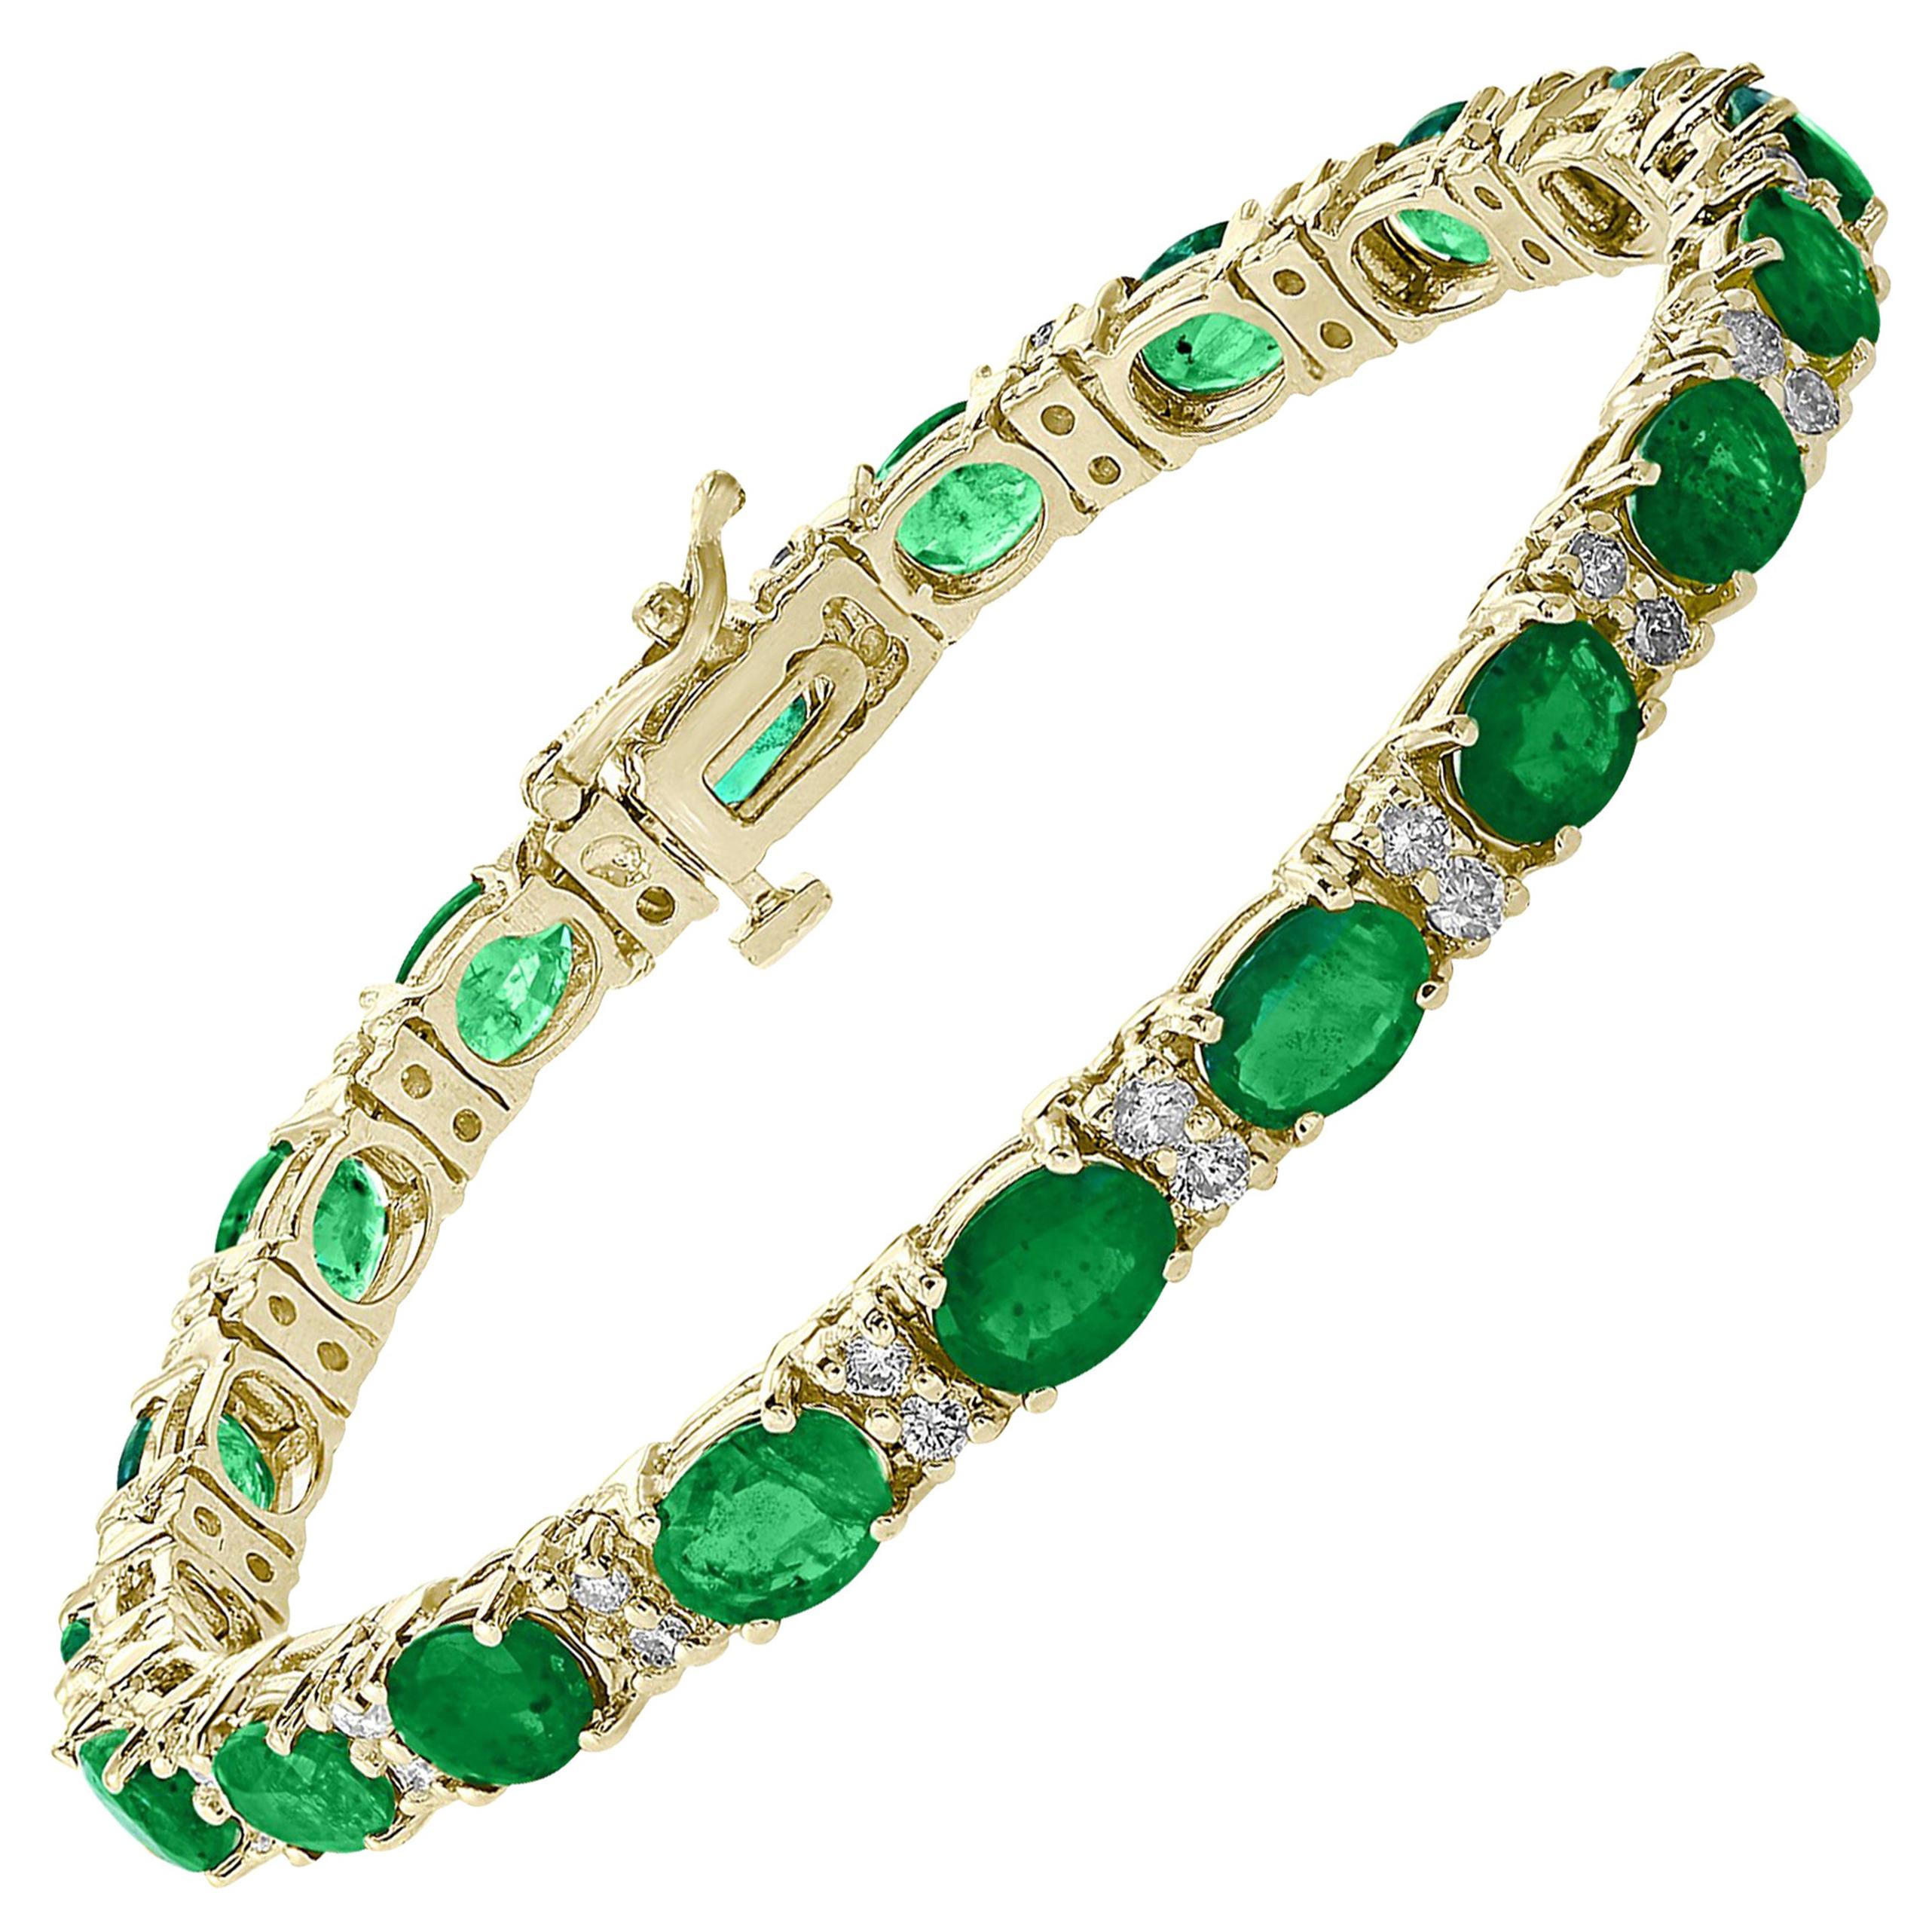 15 Carat Natural Emerald & Diamond Cocktail Tennis Bracelet 14 Karat Yellow Gold